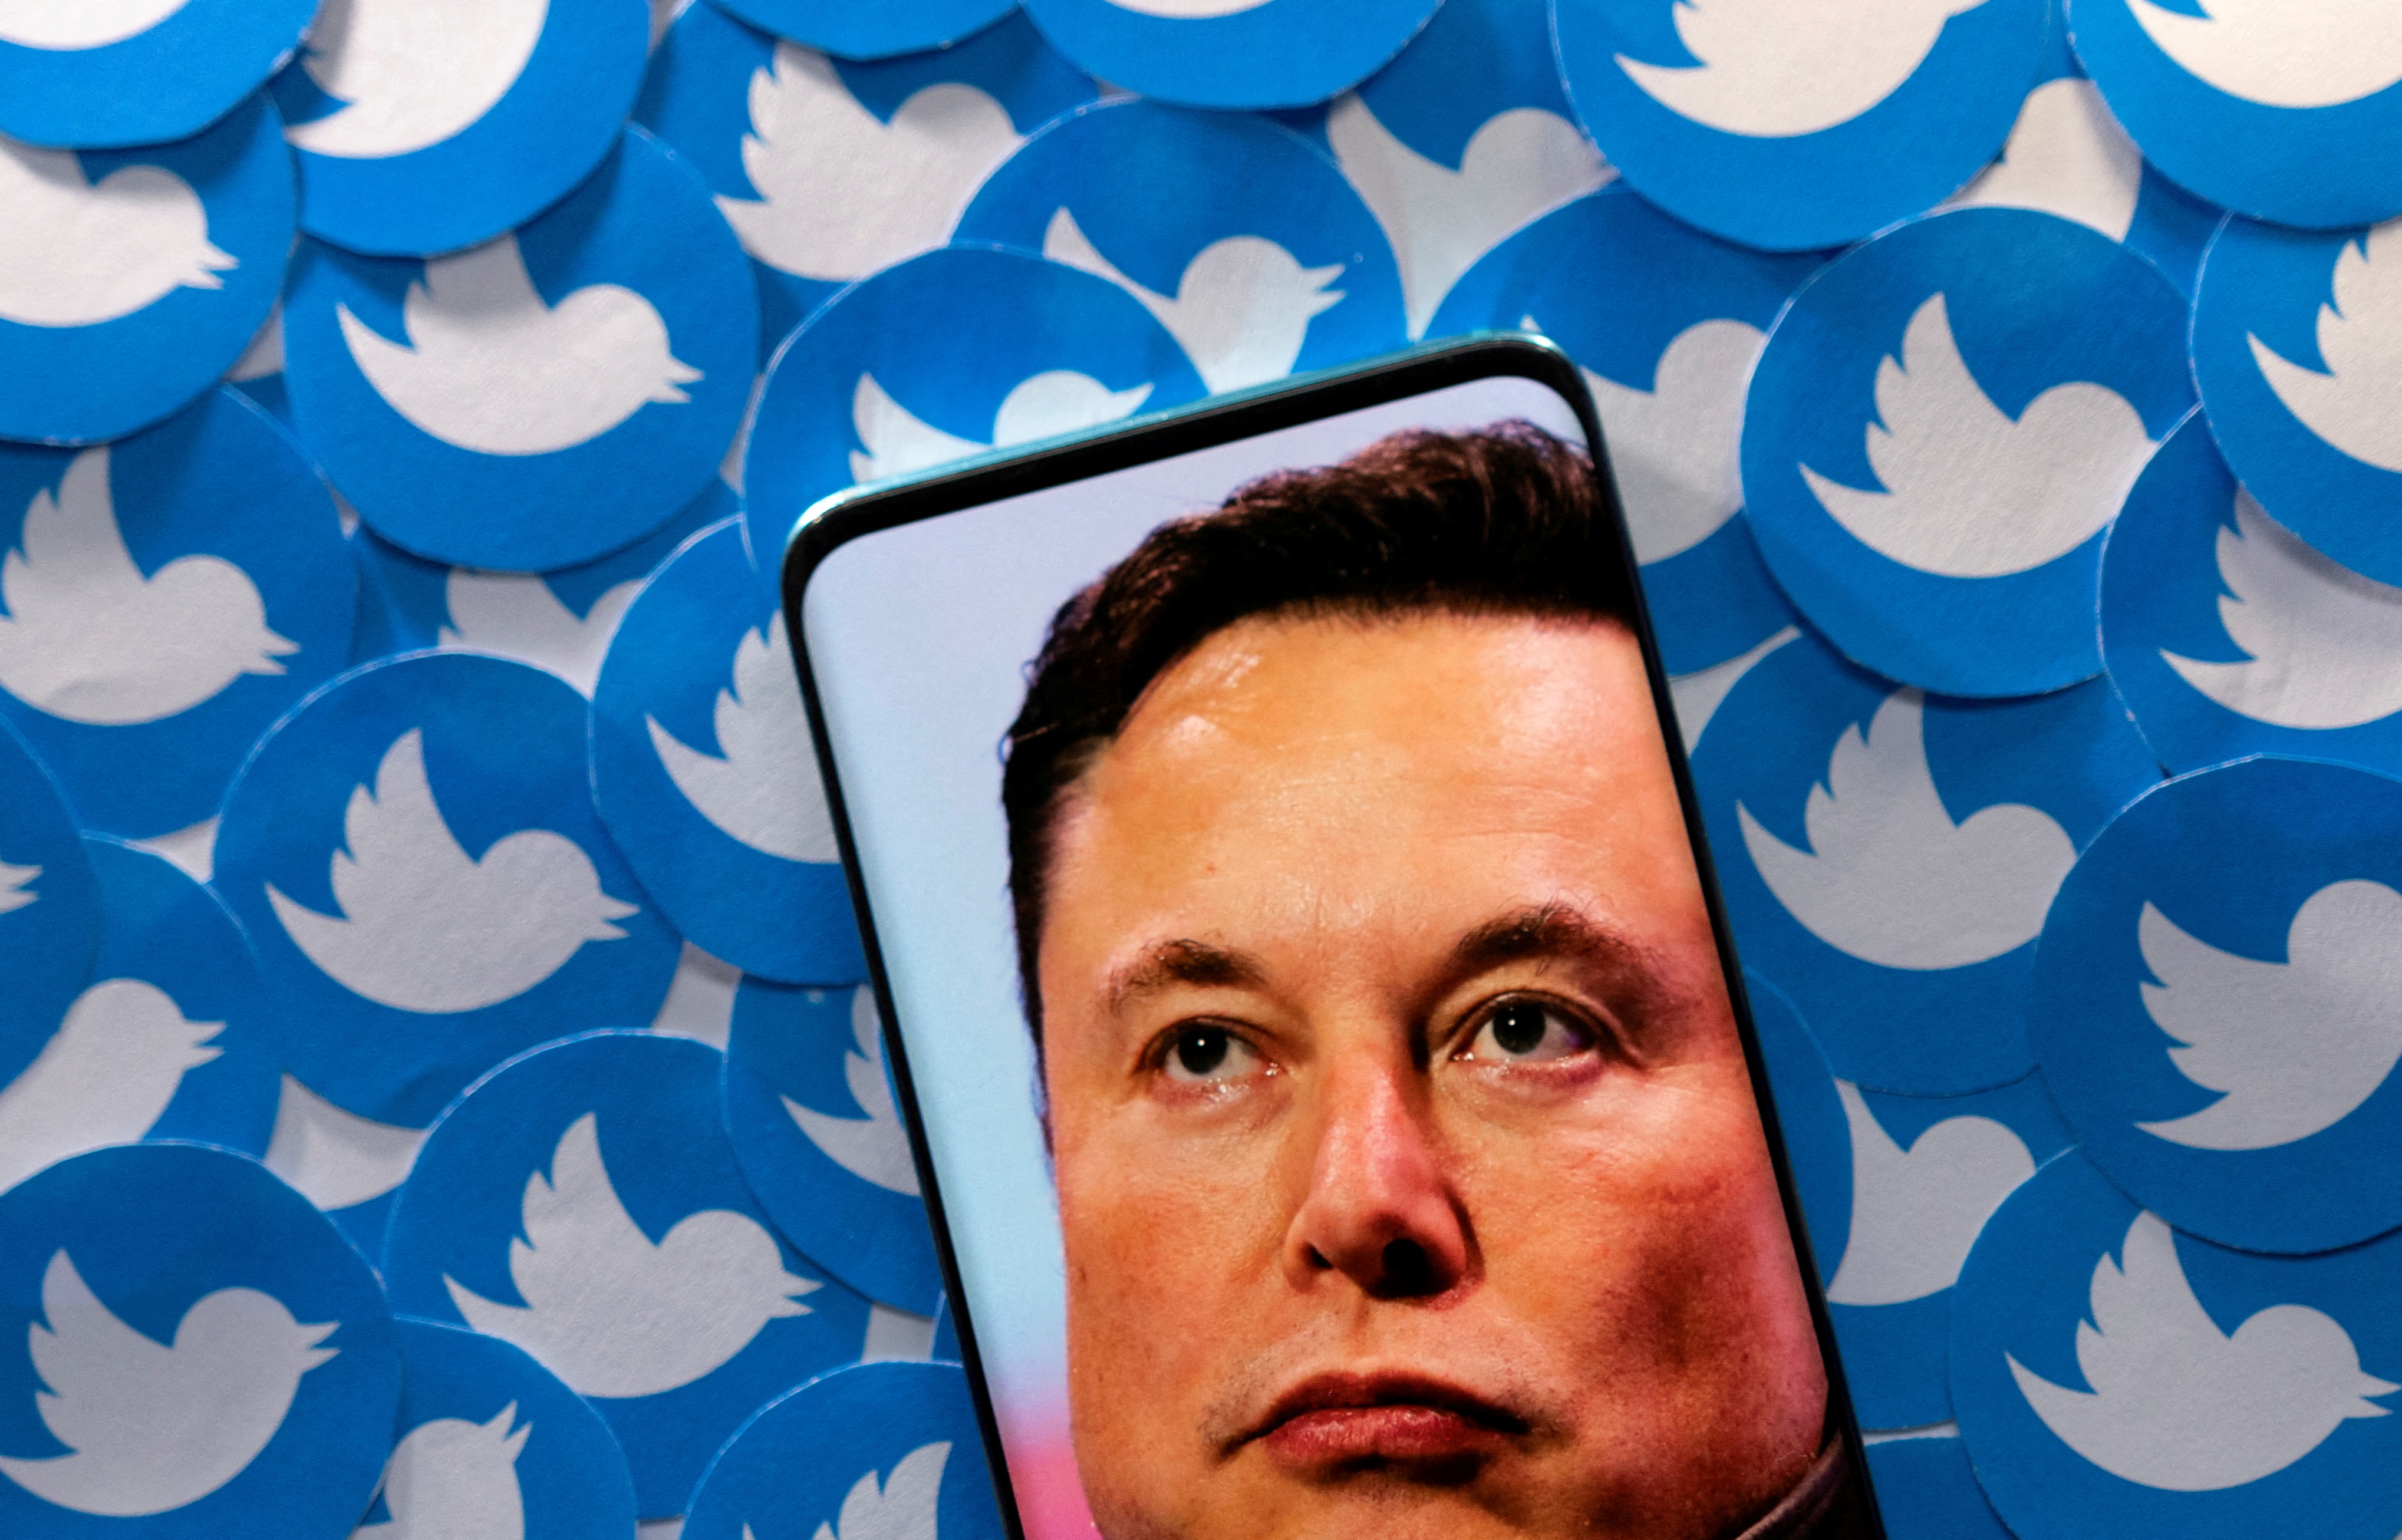 Rachat de Twitter : Elon Musk entretient le flou sur tout et multiplie les contradictions